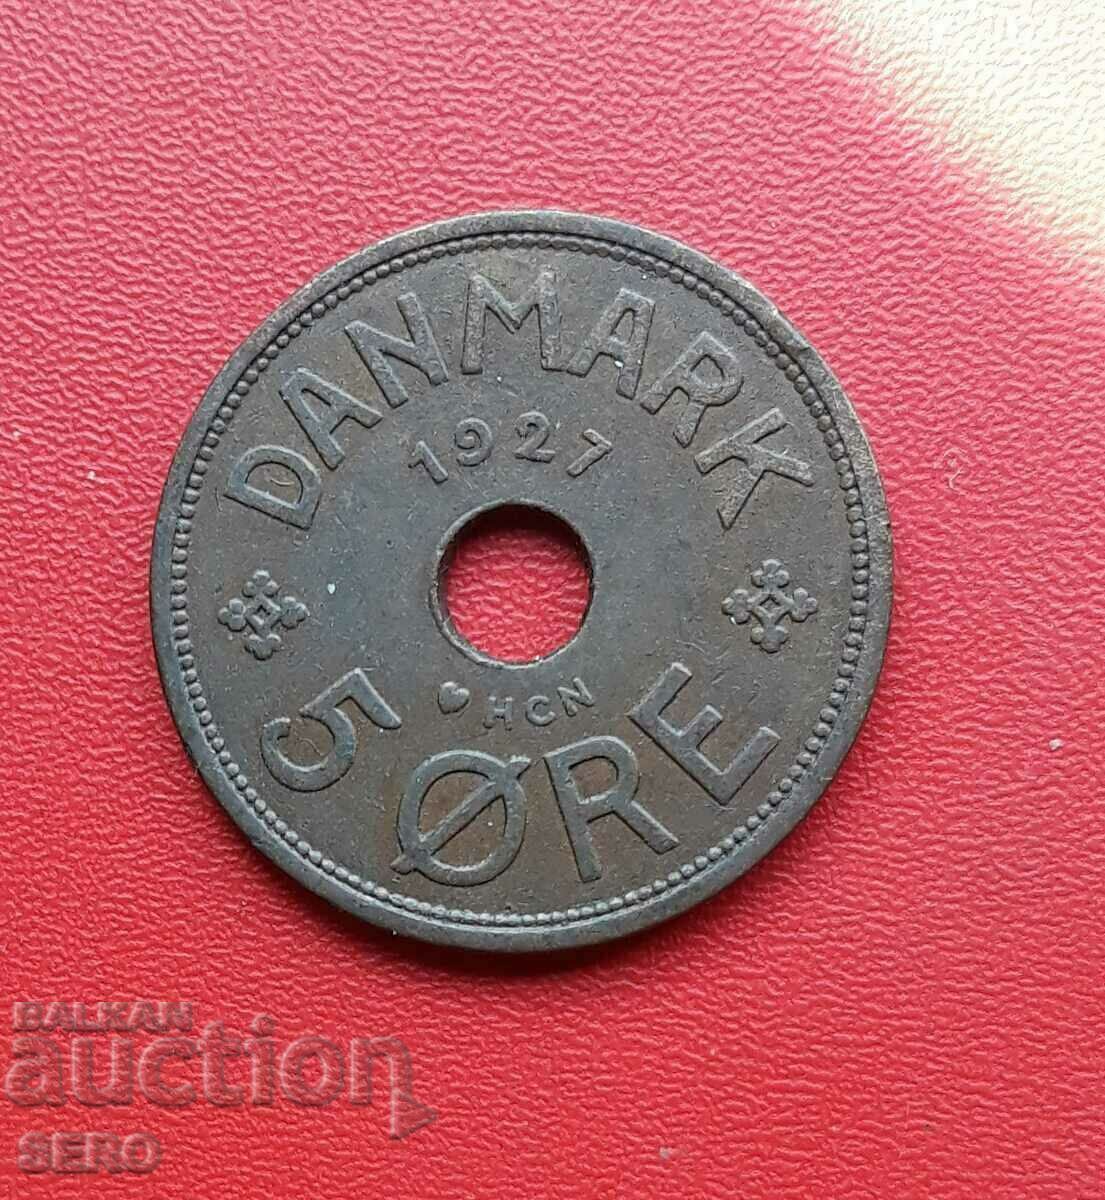 Δανία-5 yore 1927-πλ. όμορφα διατηρημένο